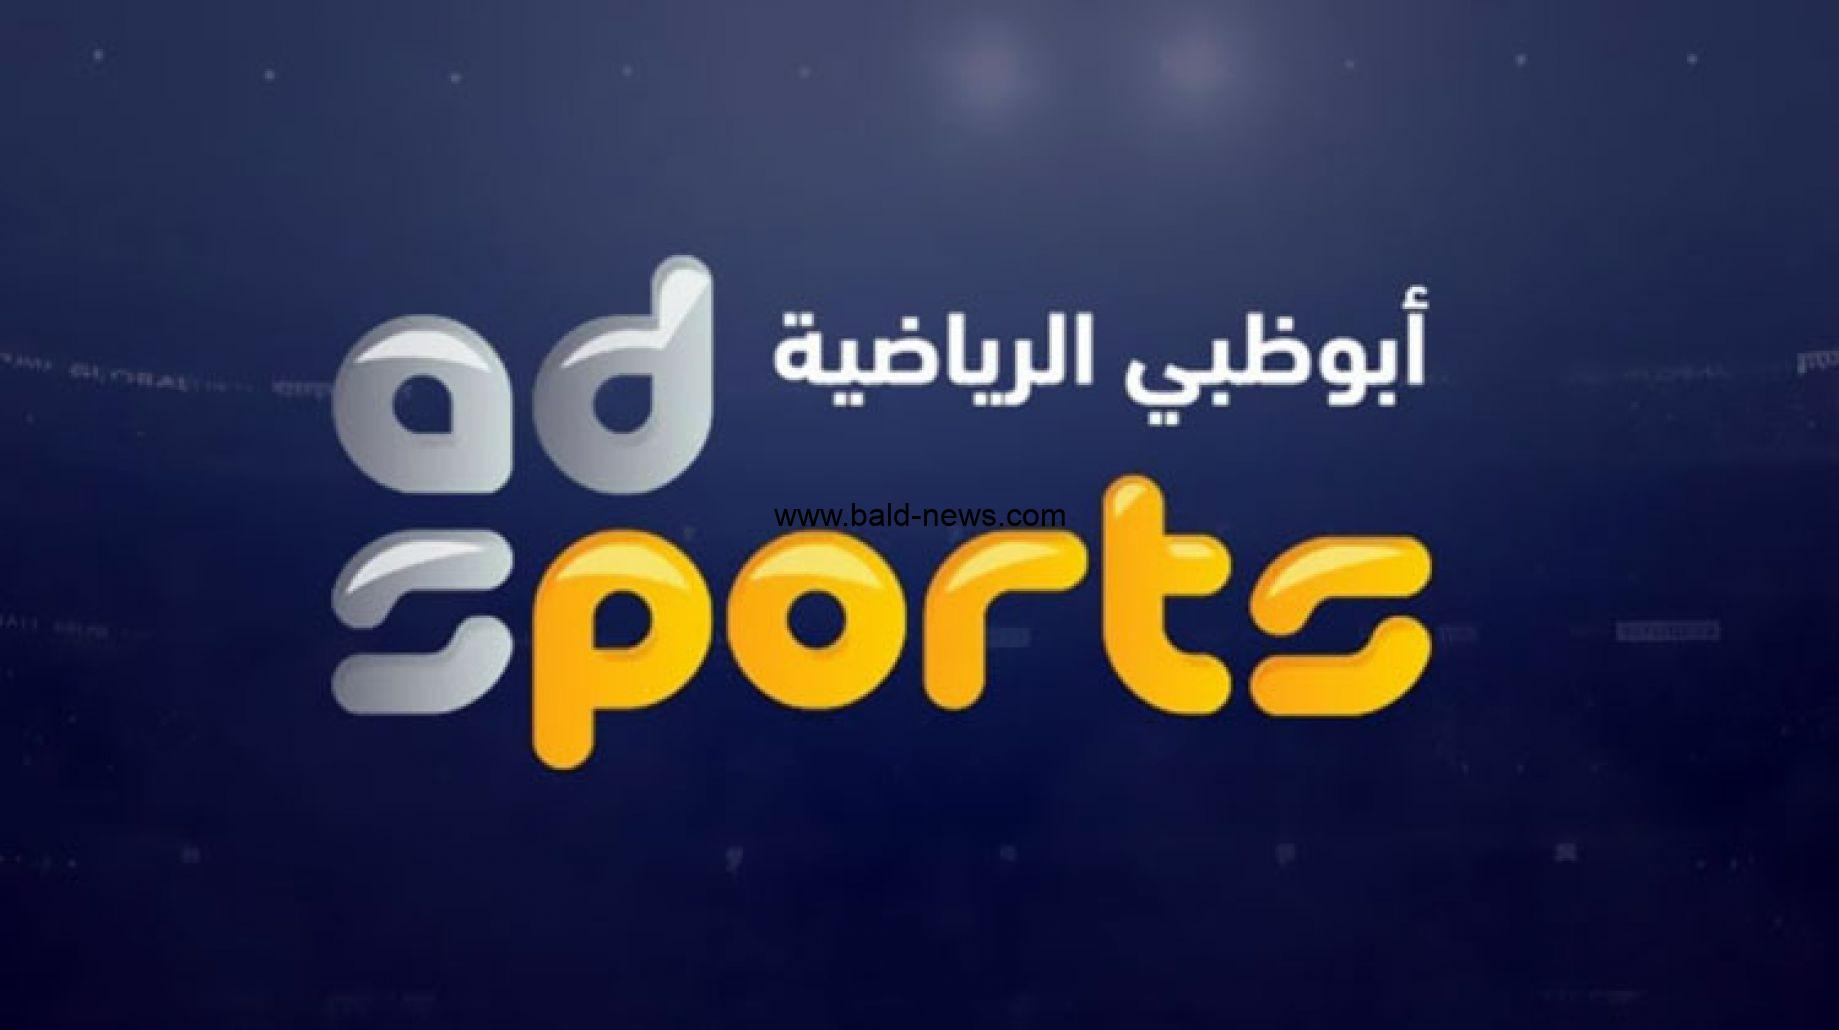 تردد قناة ابو ظبي الرياضية الجديد 2022 1 Abu Dhabi sport  على جميع الاقمار الصناعية